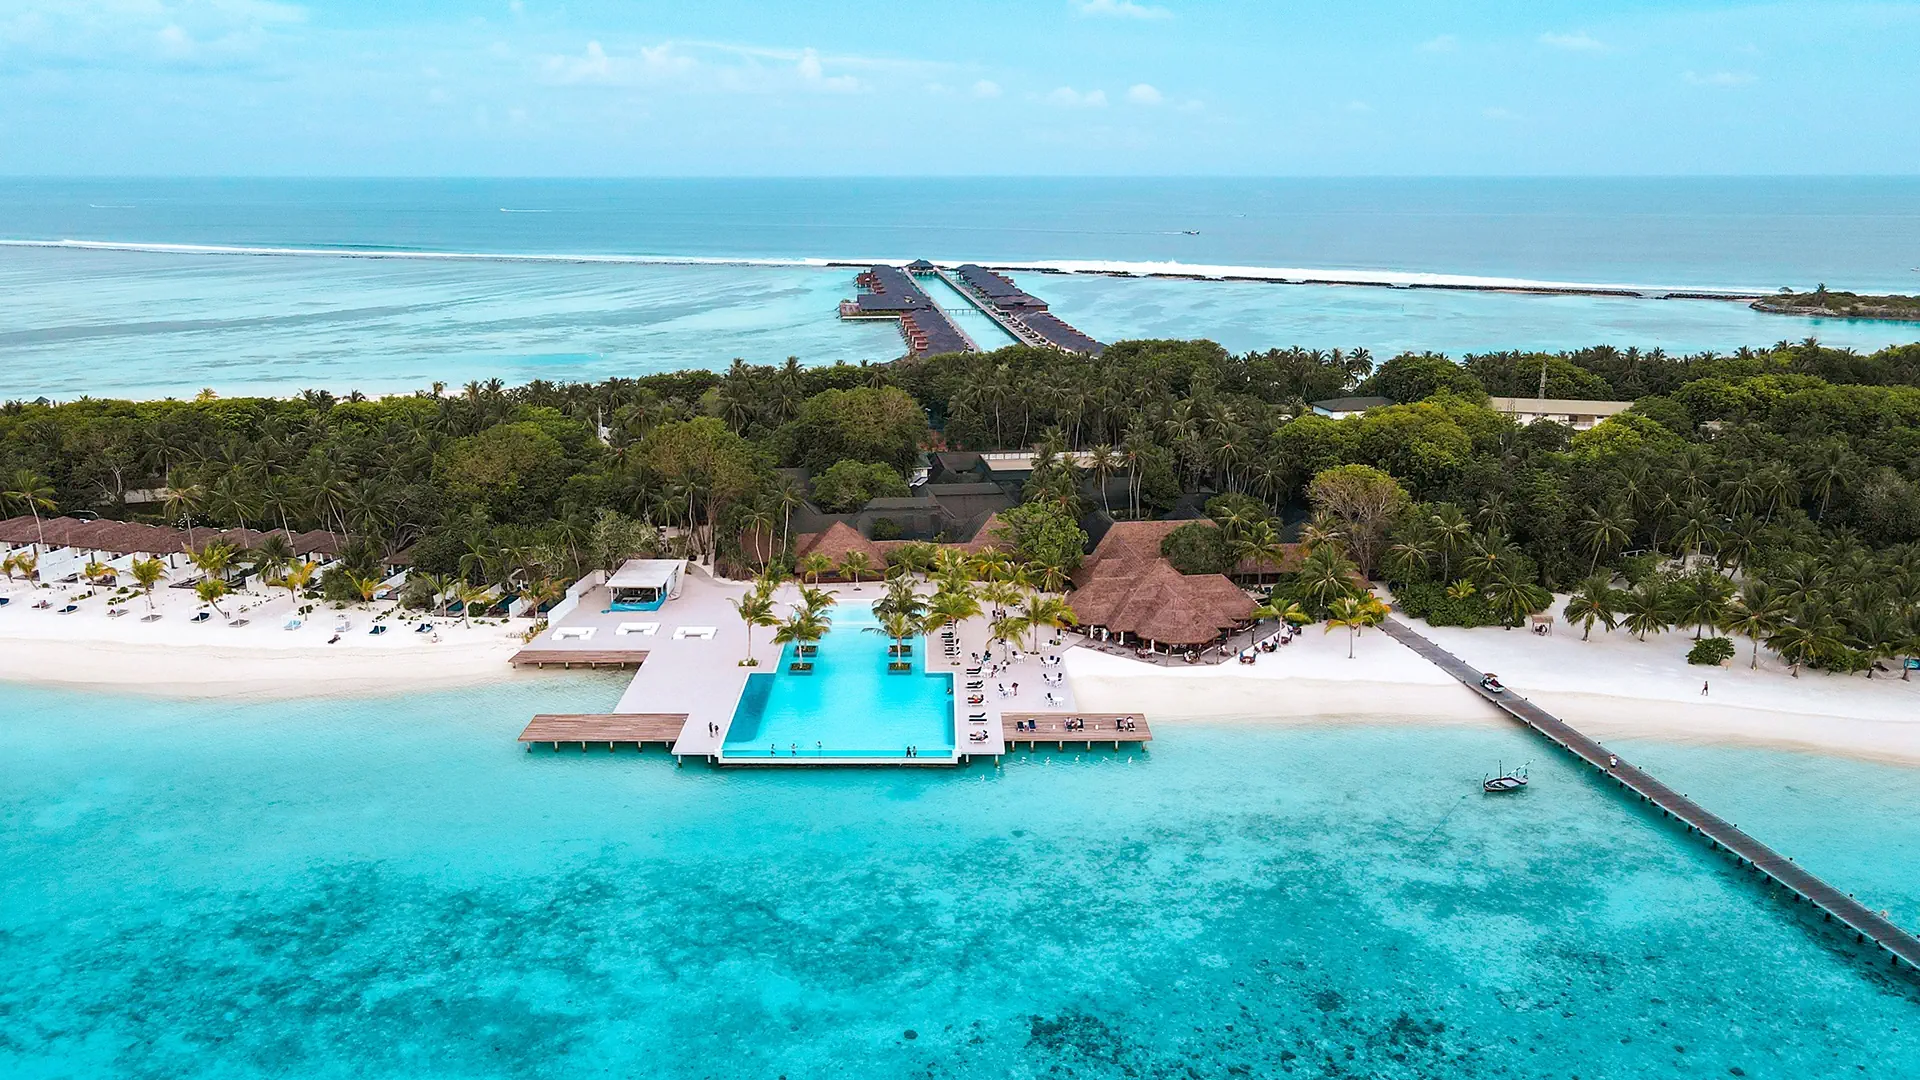 Malediwy Male Atol Lankanfinolhu Island Villa Nautica Paradise Island (ex. Paradise Island Resort)